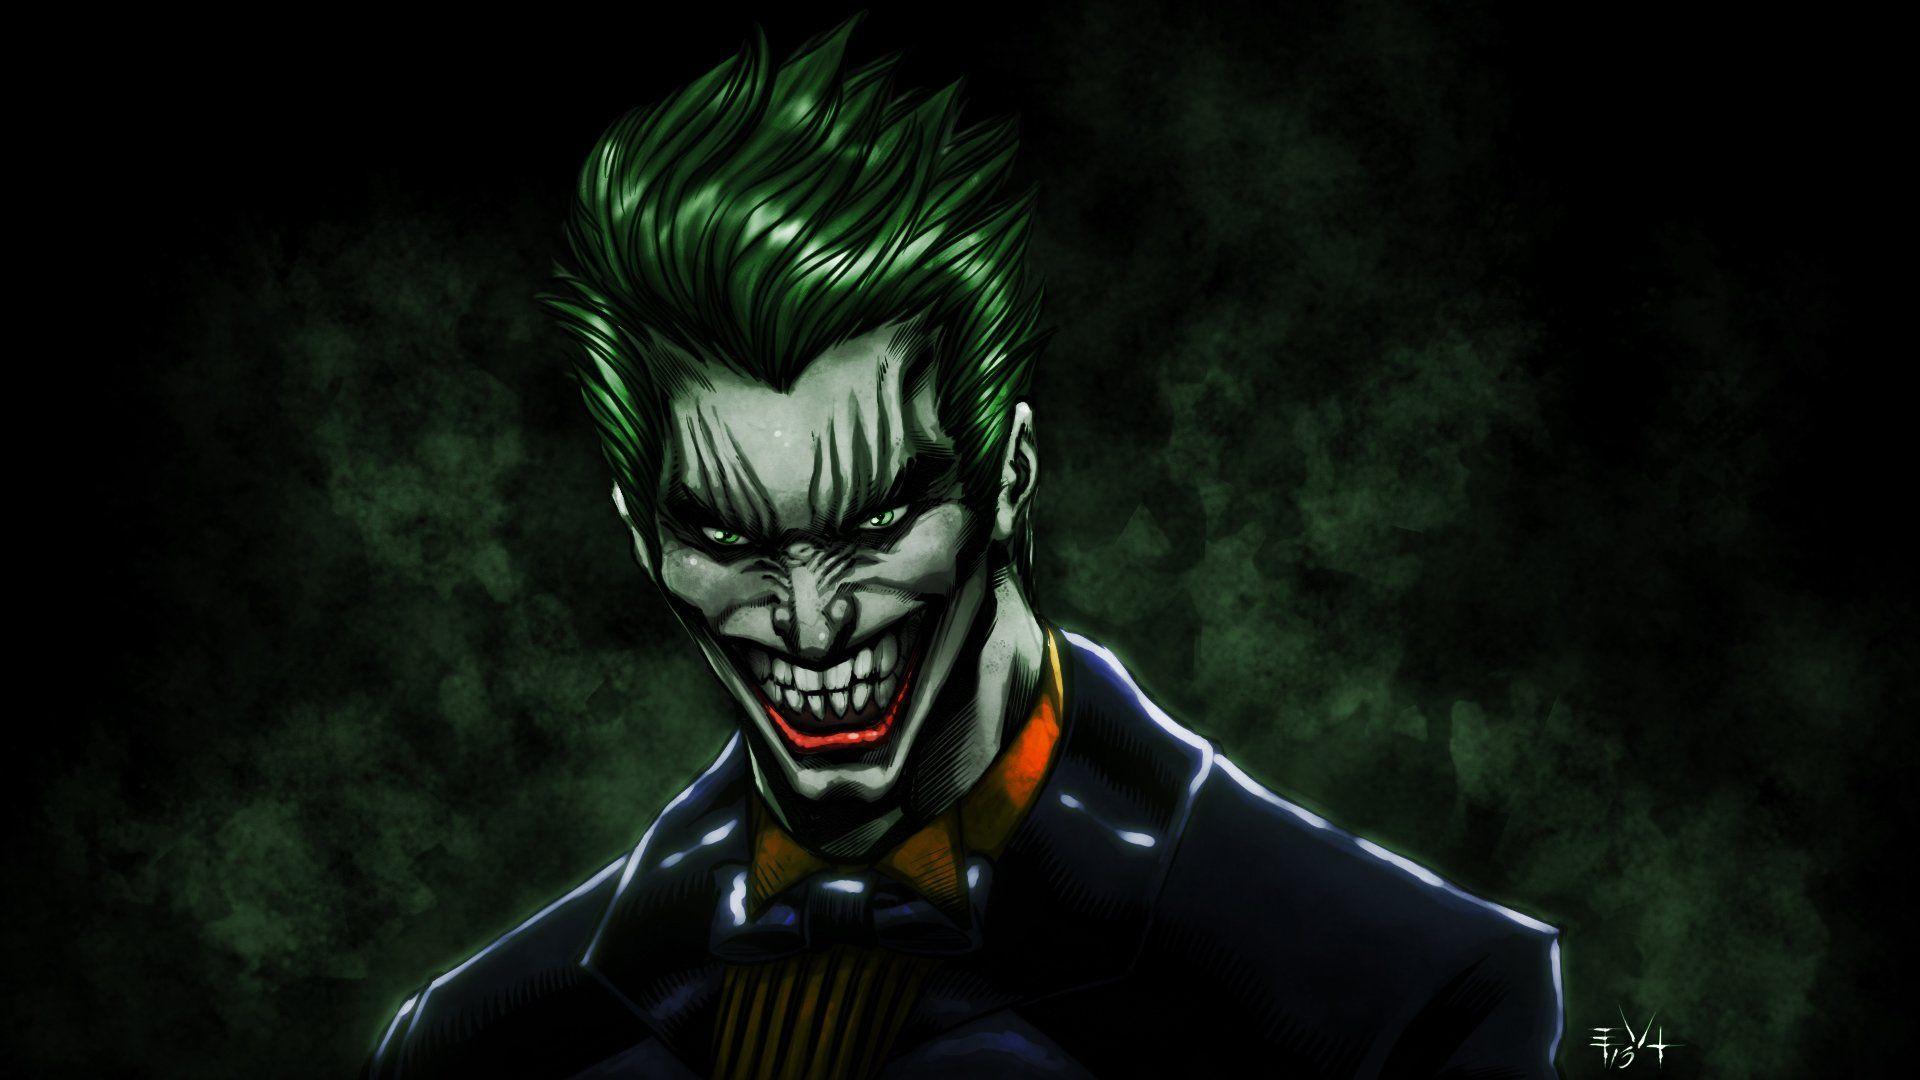 Download Gambar Joker Wallpaper Hd Animated terbaru 2020